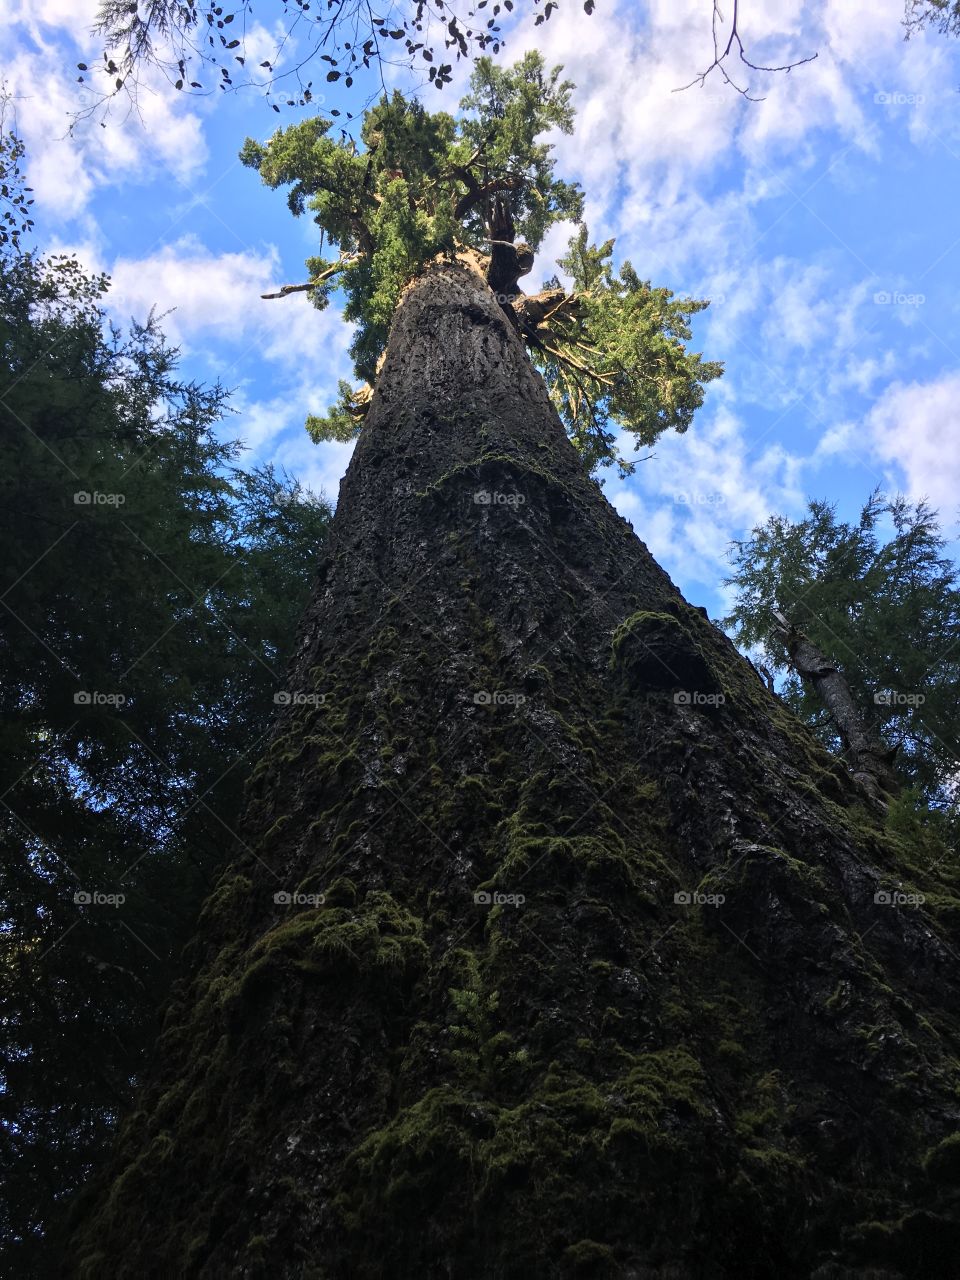 The Red Creek Fir. It's the world's largest Douglas Fir tree. 